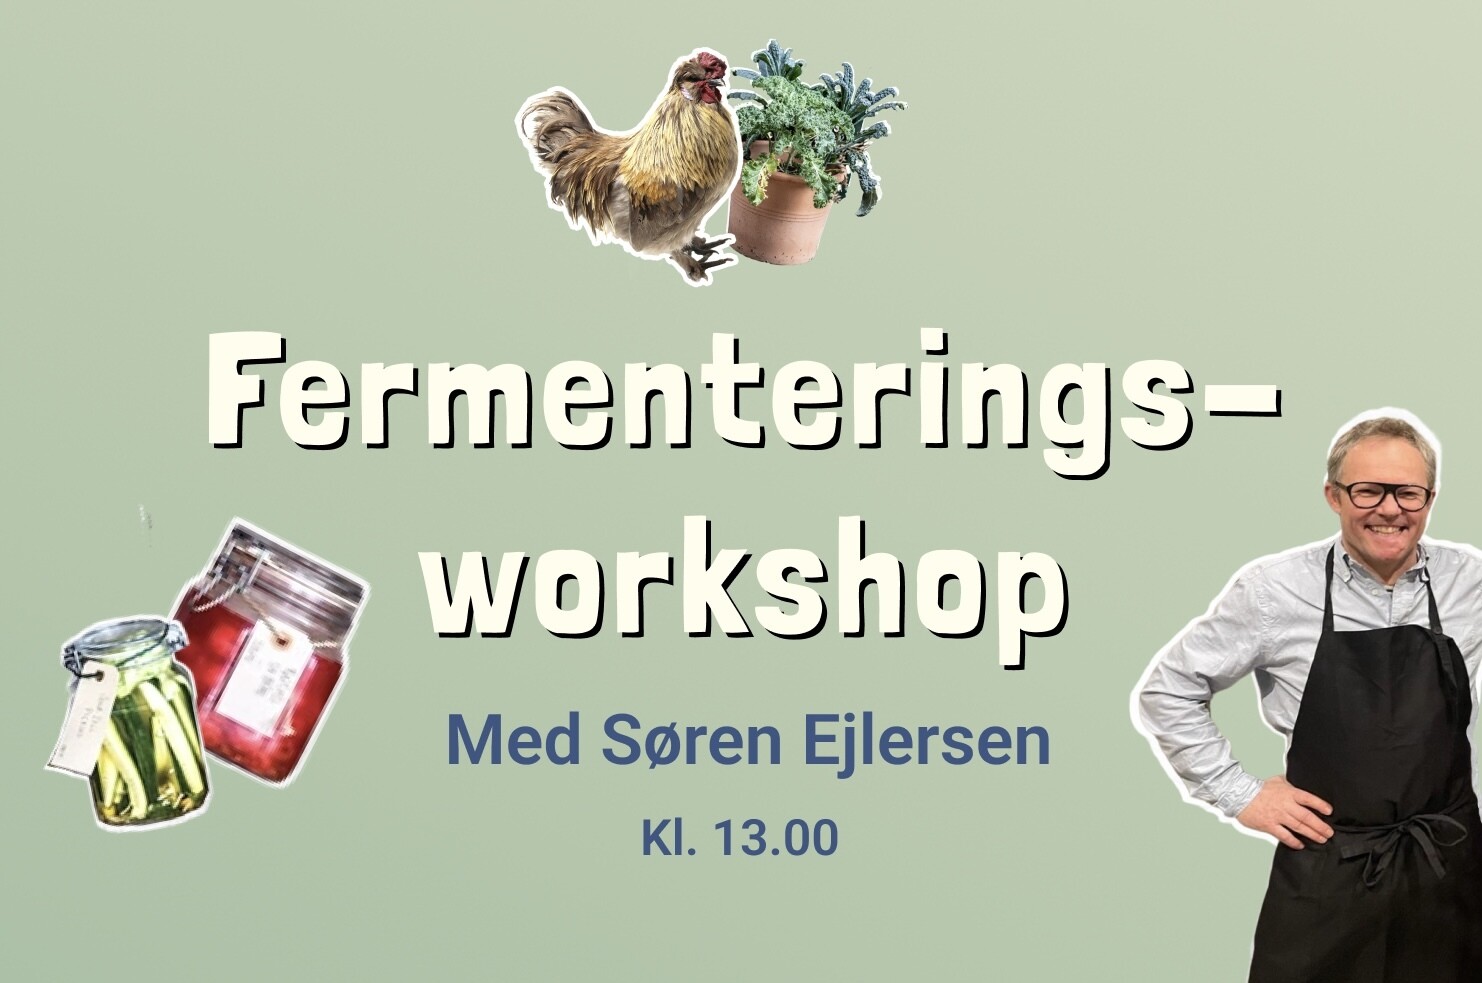 Fermenteringsworkshop med Søren Ejlersen, Dato: Lørdag d. 16. september